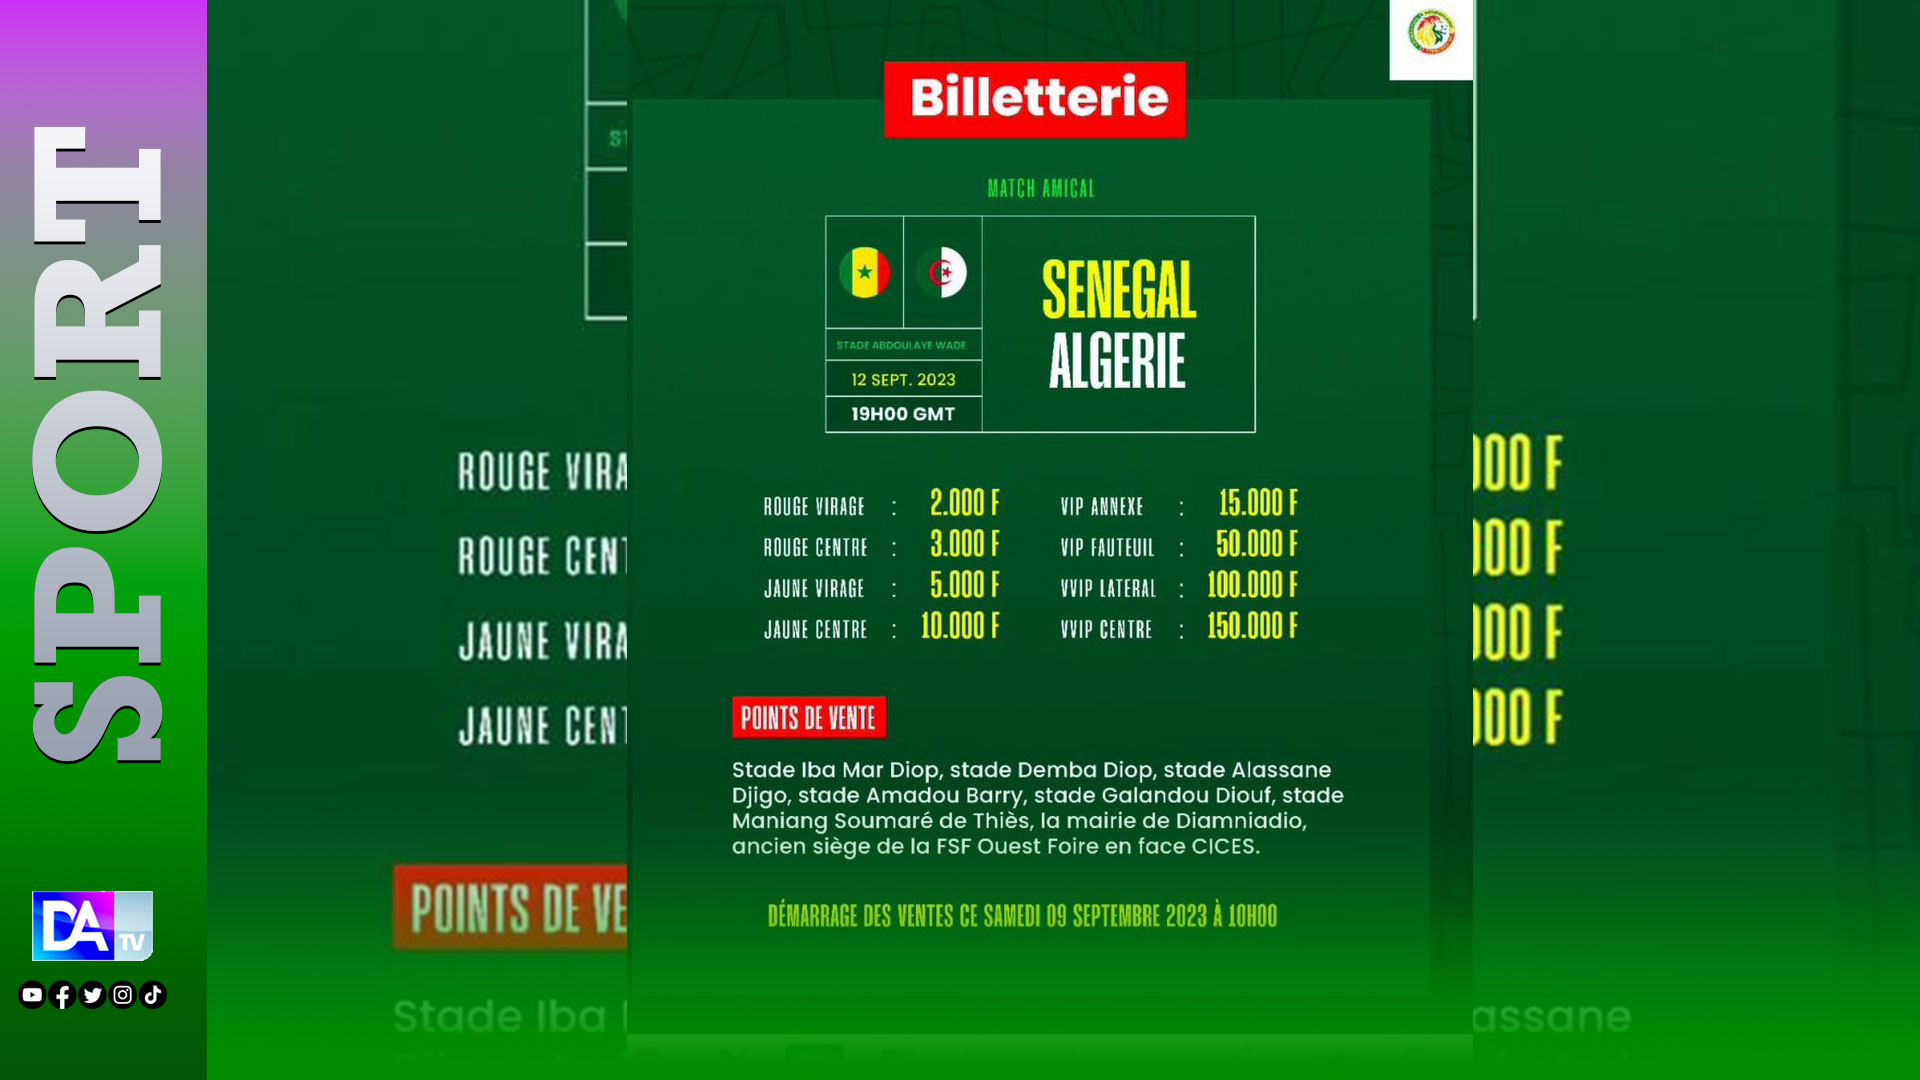 Billetterie : Les tickets pour le match Sénégal vs Algérie disponibles à partir de samedi …